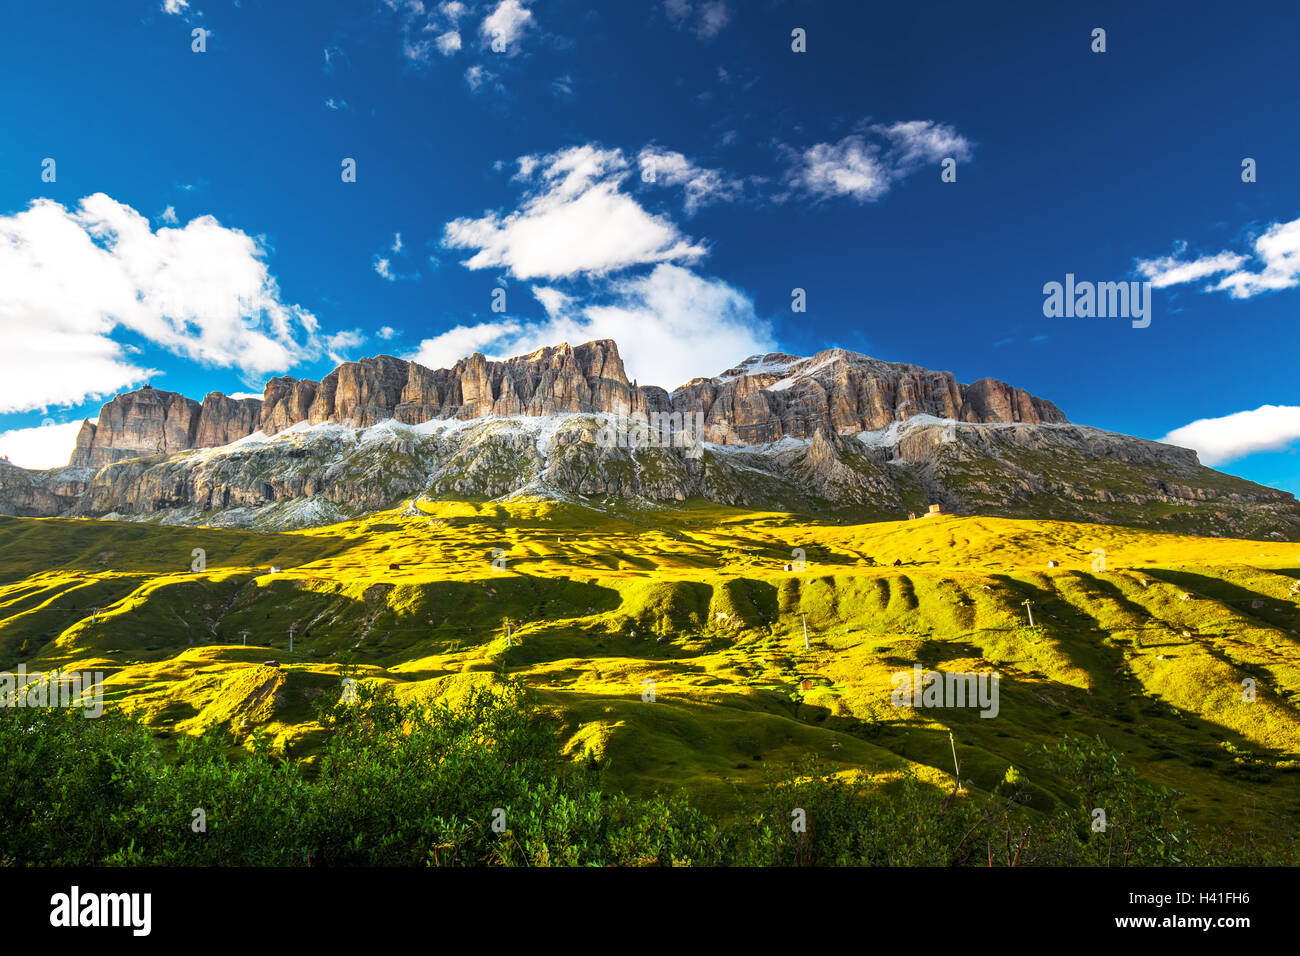 View to Sass Pordoi massive in Dolomites, Italy, Europe Stock Photo